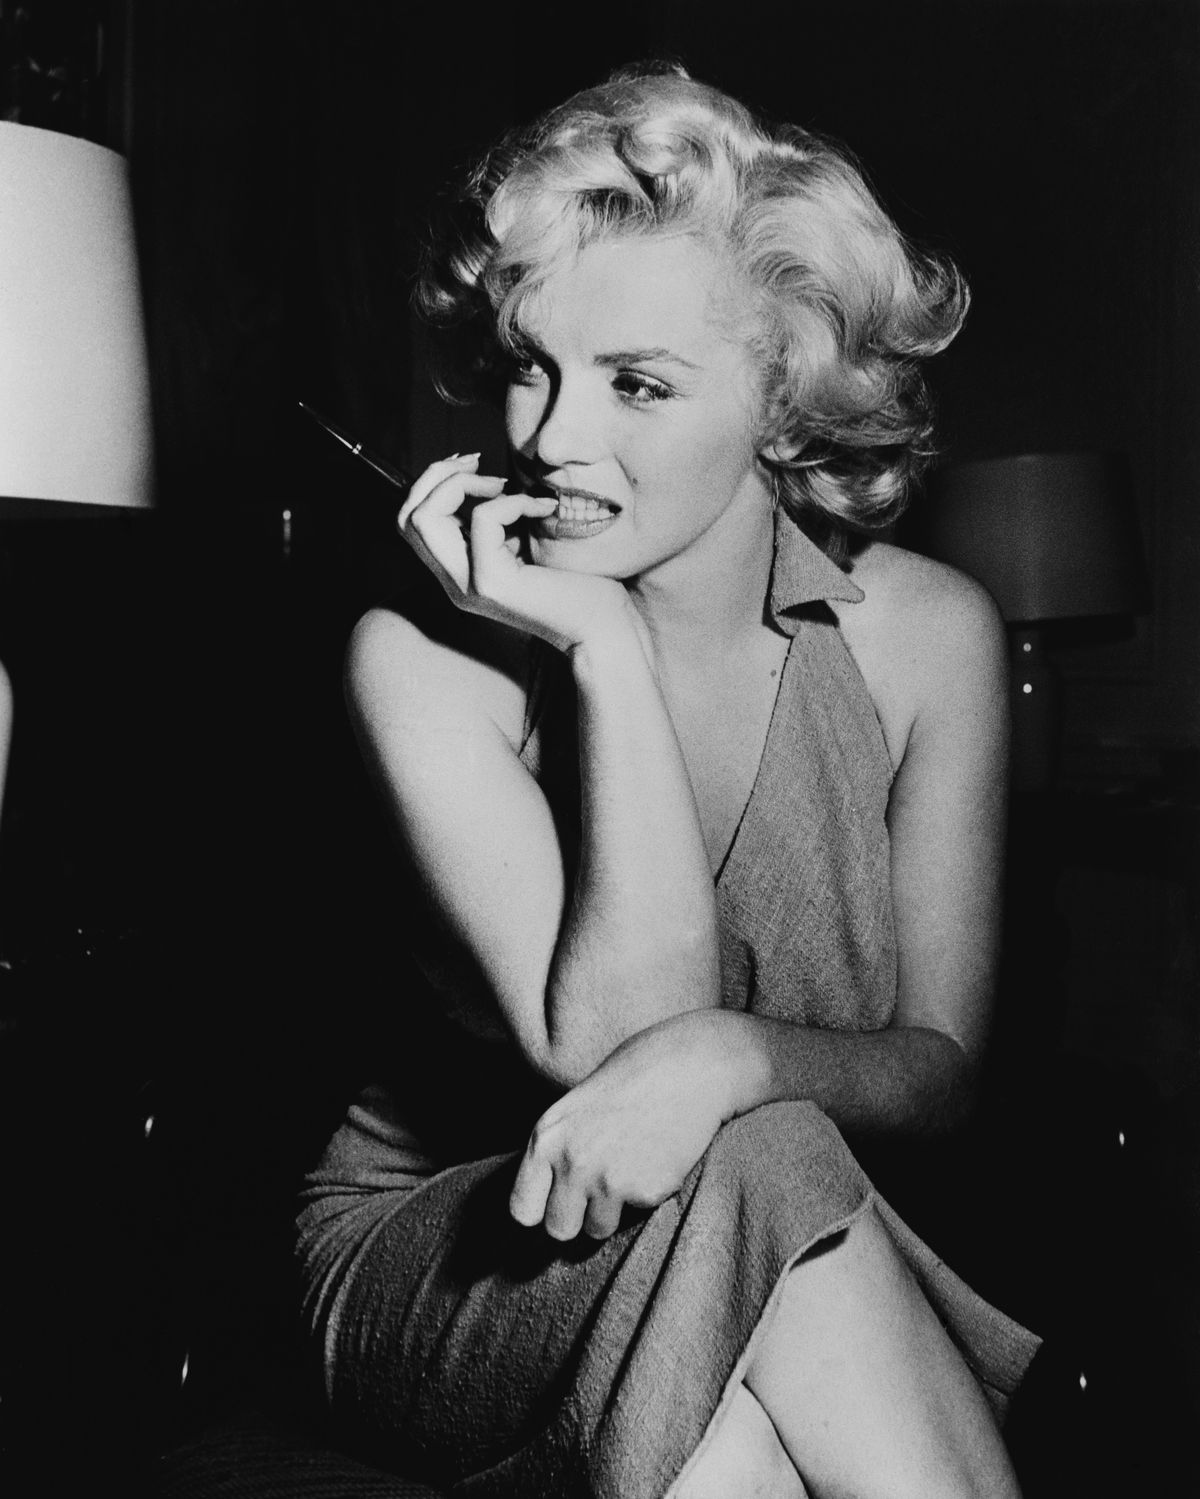 Vintage 50s Film Star Nudes - The explosive real story behind Marilyn Monroe film Blonde